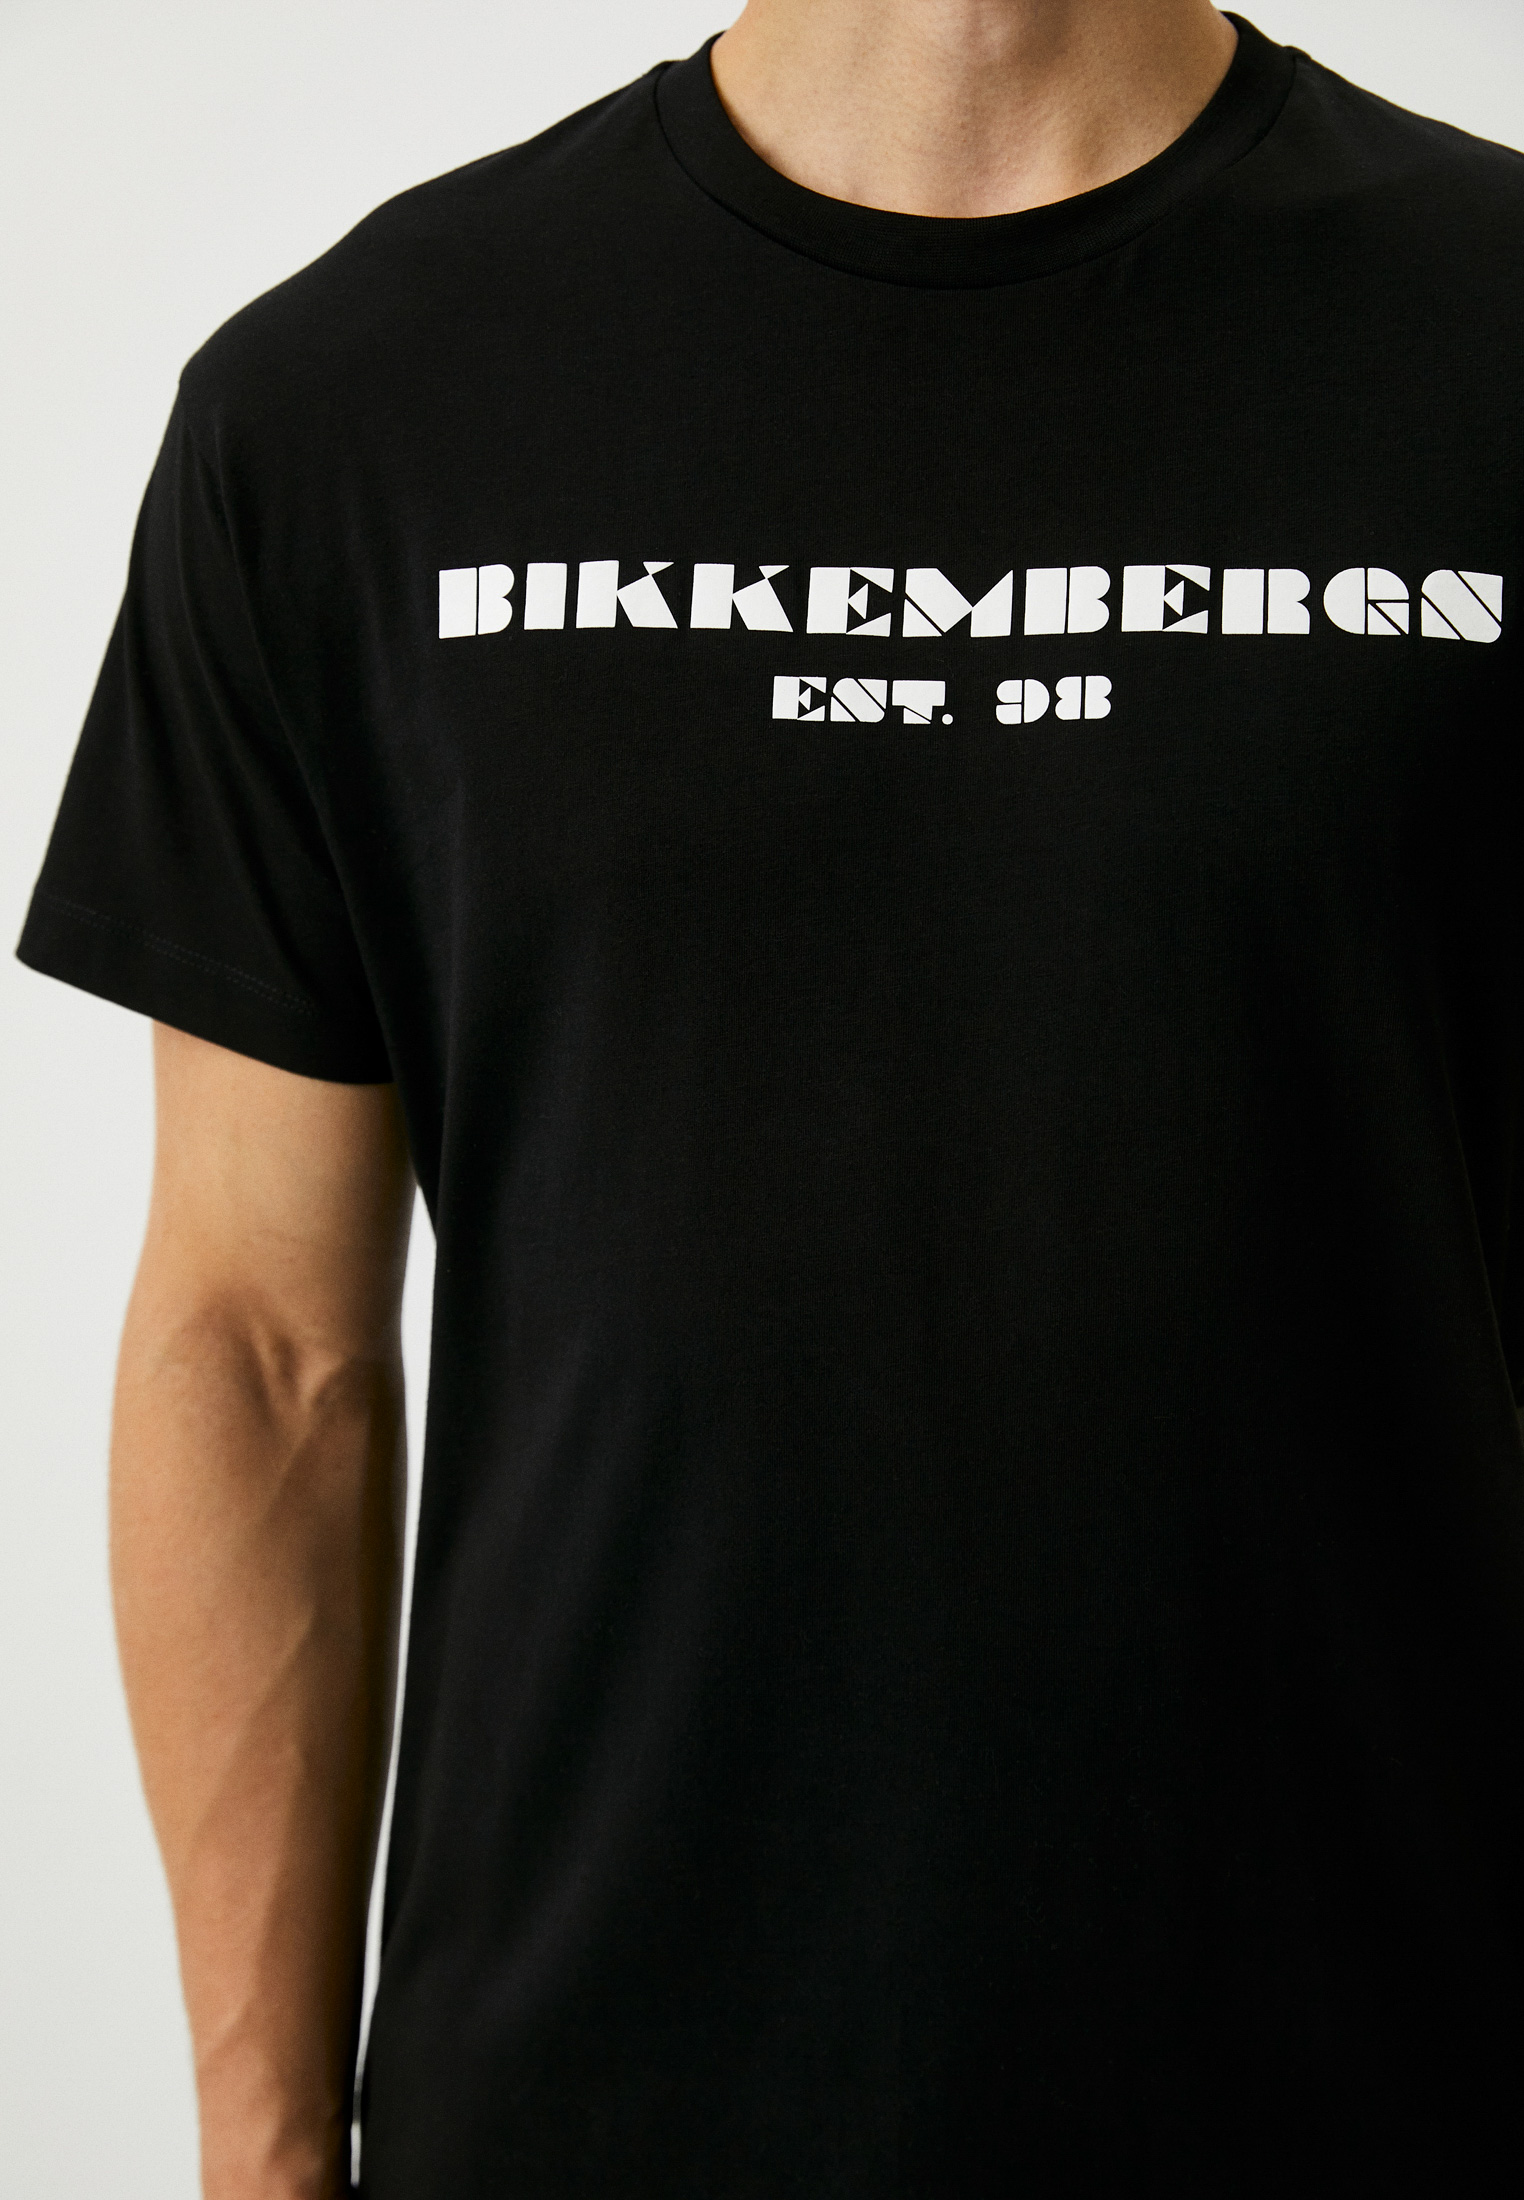 Мужская футболка Bikkembergs (Биккембергс) C 4 114 13 M 3876: изображение 4